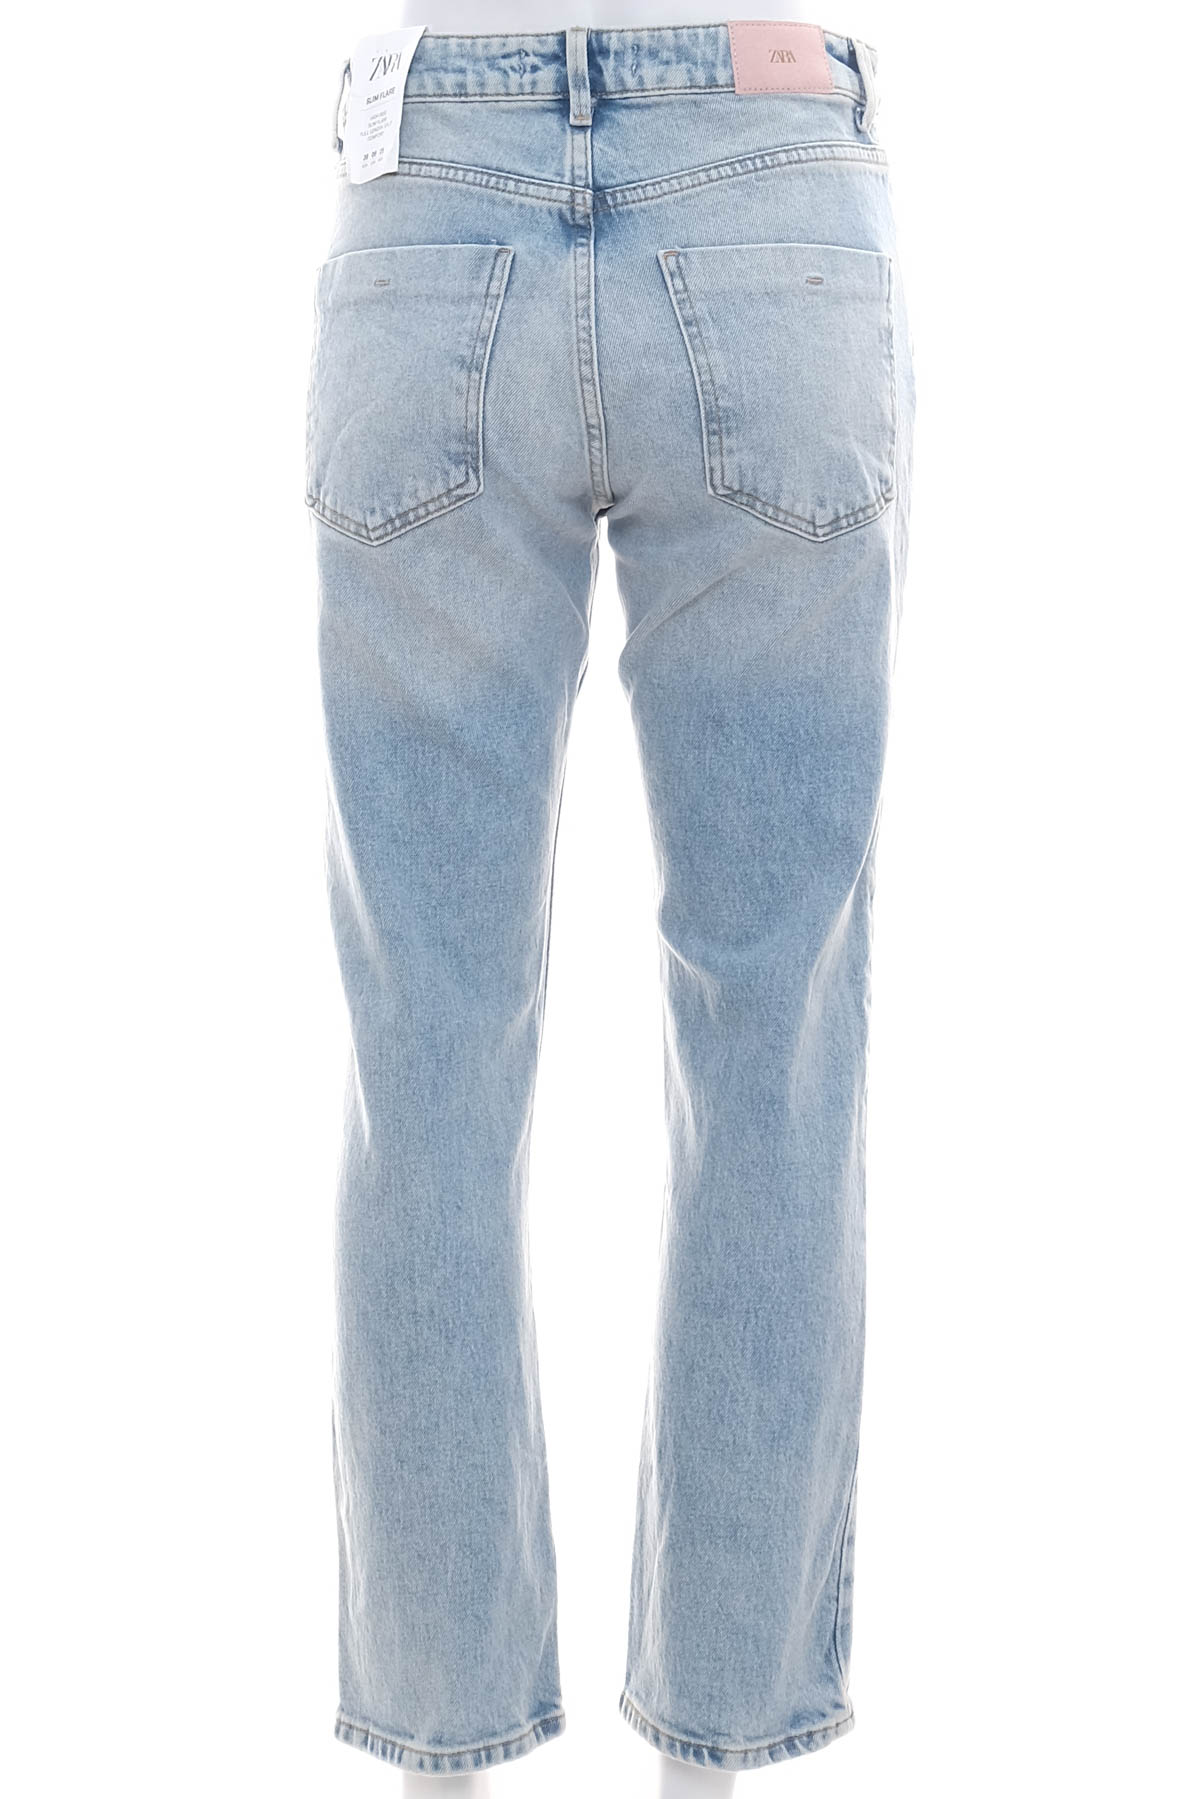 Women's jeans - ZARA - 1